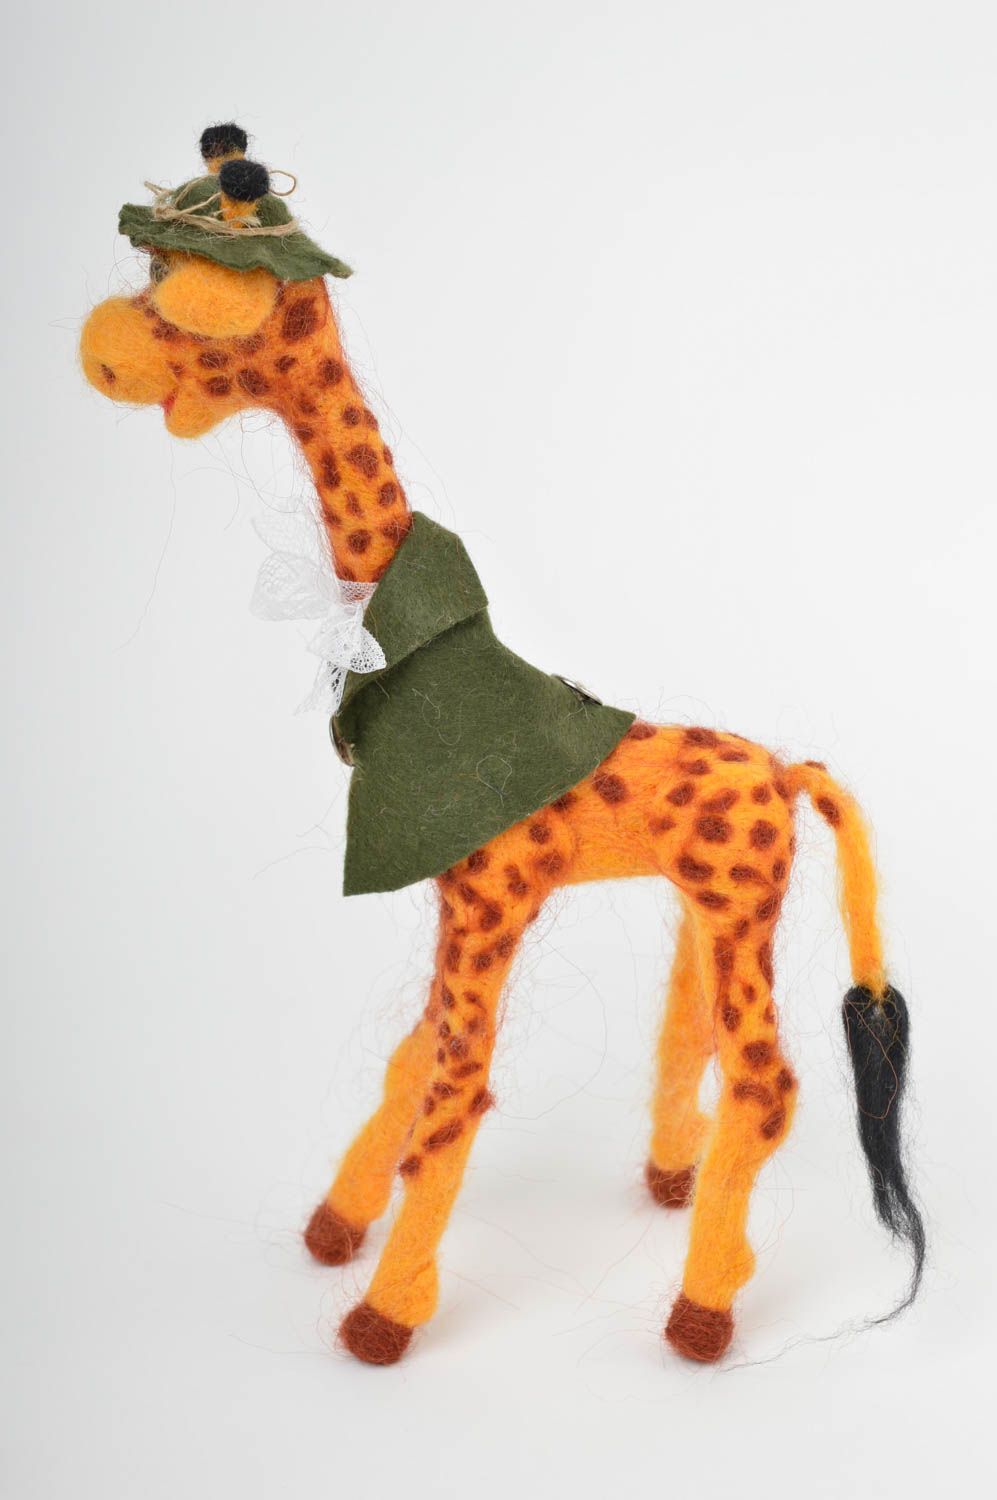 Валяная игрушка ручной работы игрушка из шерсти мягкая игрушка декор Жираф фото 4